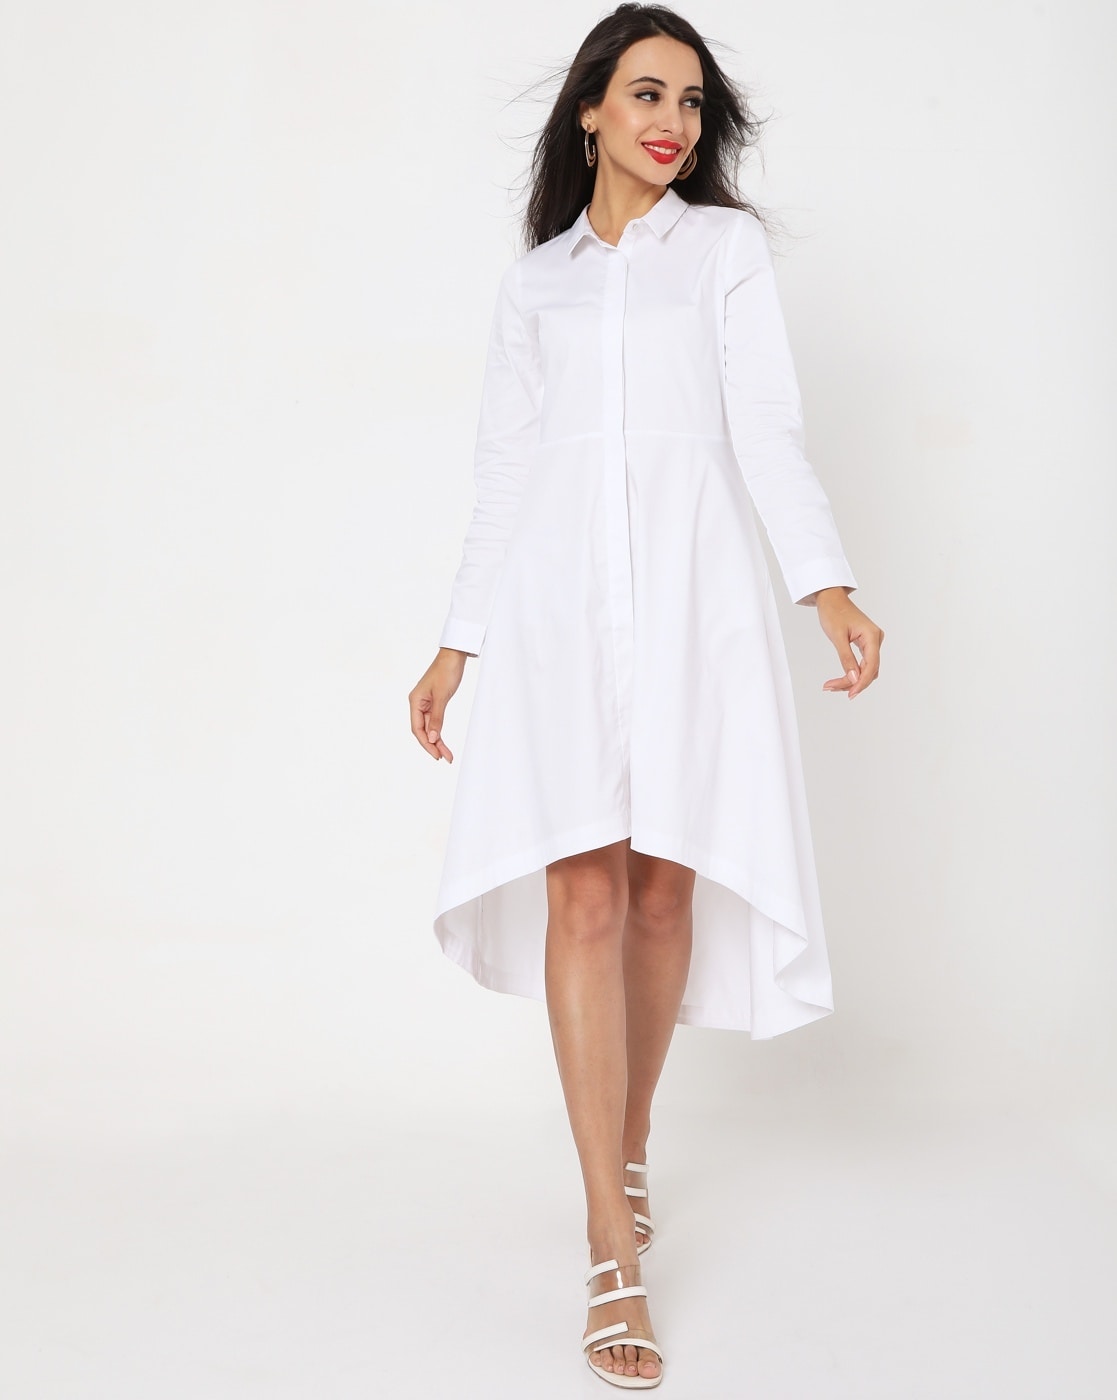 White Shirt Dress, Oversized Shirt, White Maxi Dress, Trendy Plus Size  Clothing - Etsy